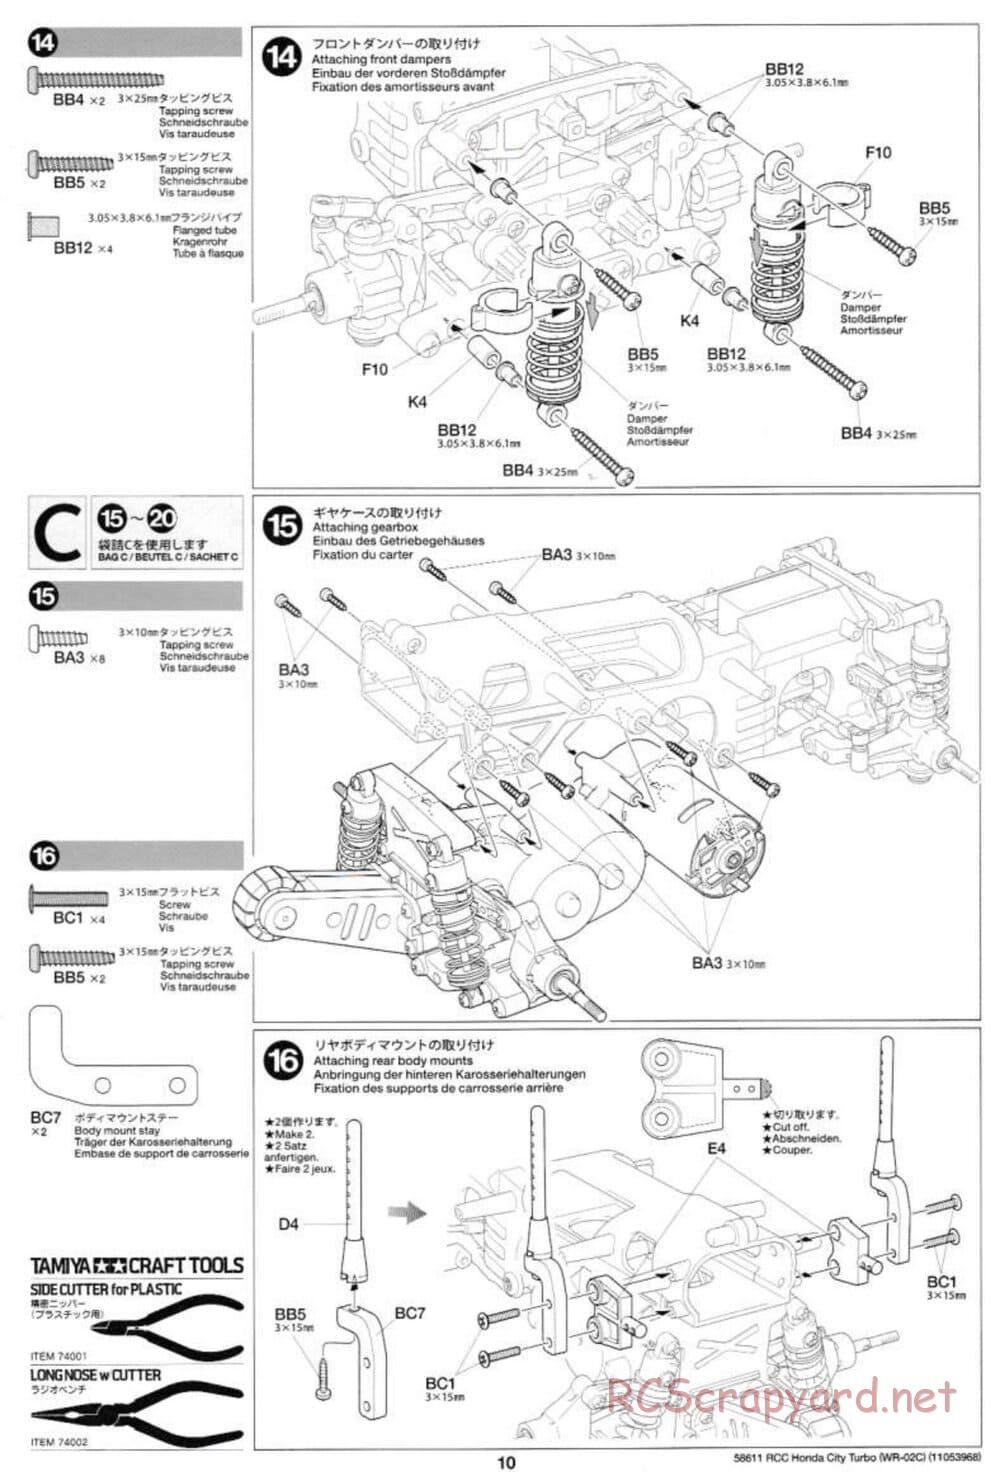 Tamiya - Honda City Turbo - WR-02C Chassis - Manual - Page 10